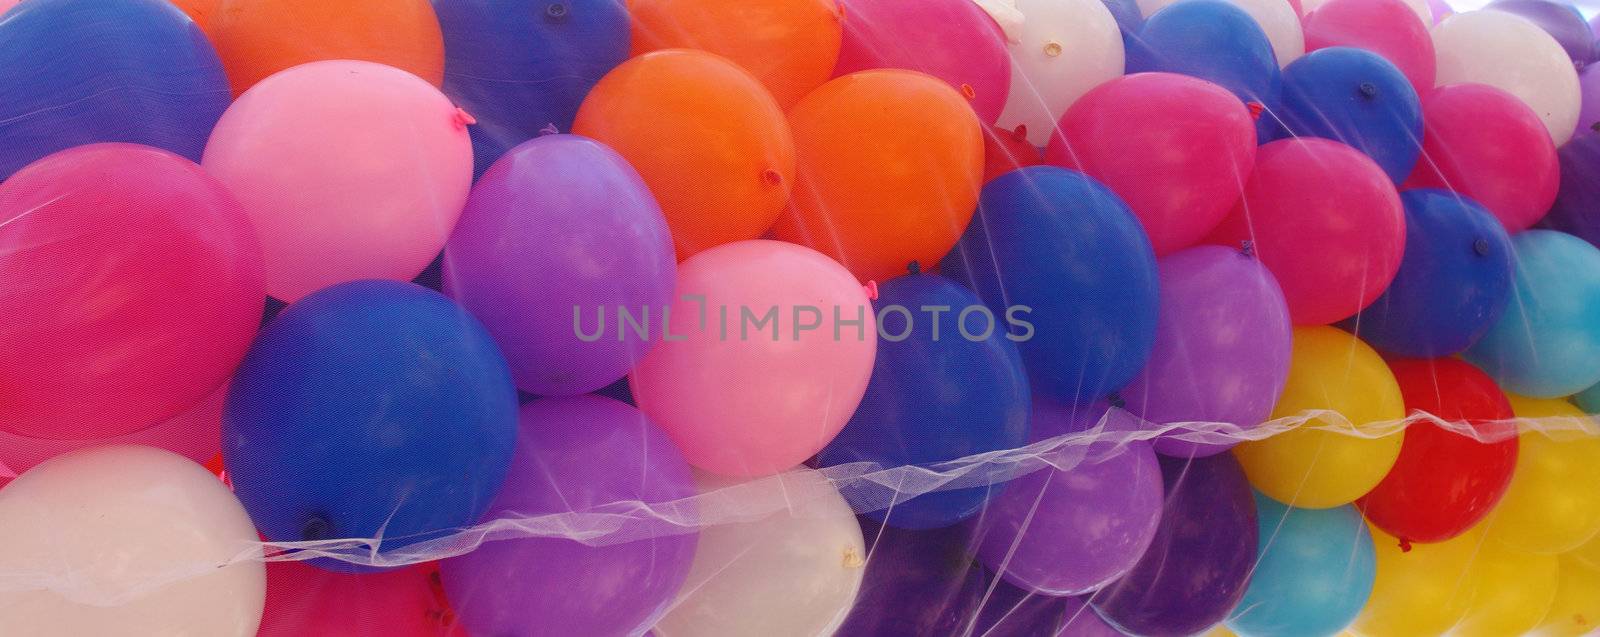 Mixed air baloons by shamtor